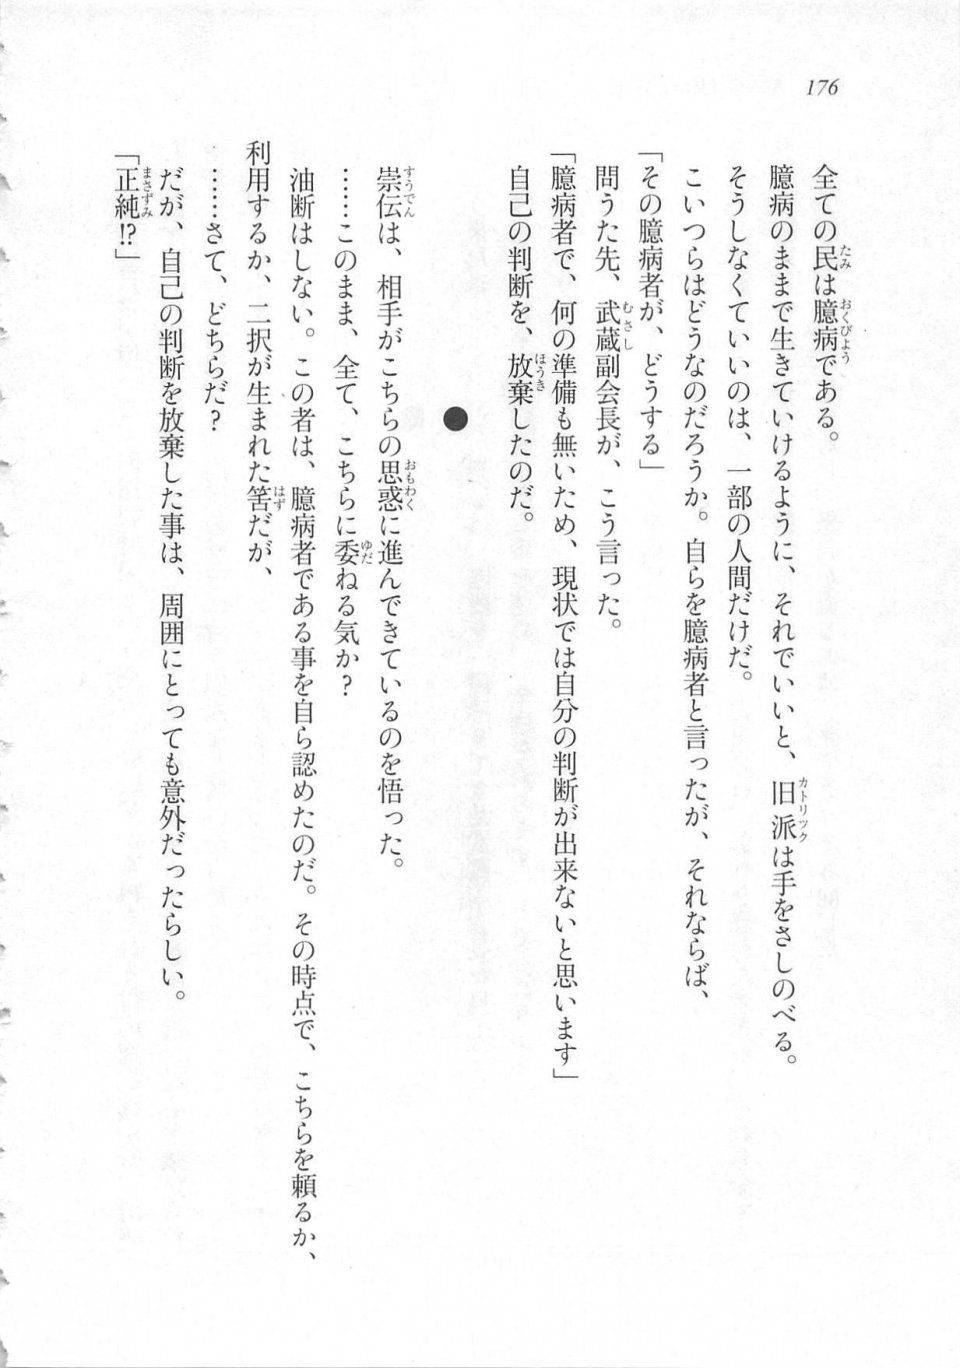 Kyoukai Senjou no Horizon LN Sidestory Vol 3 - Photo #180